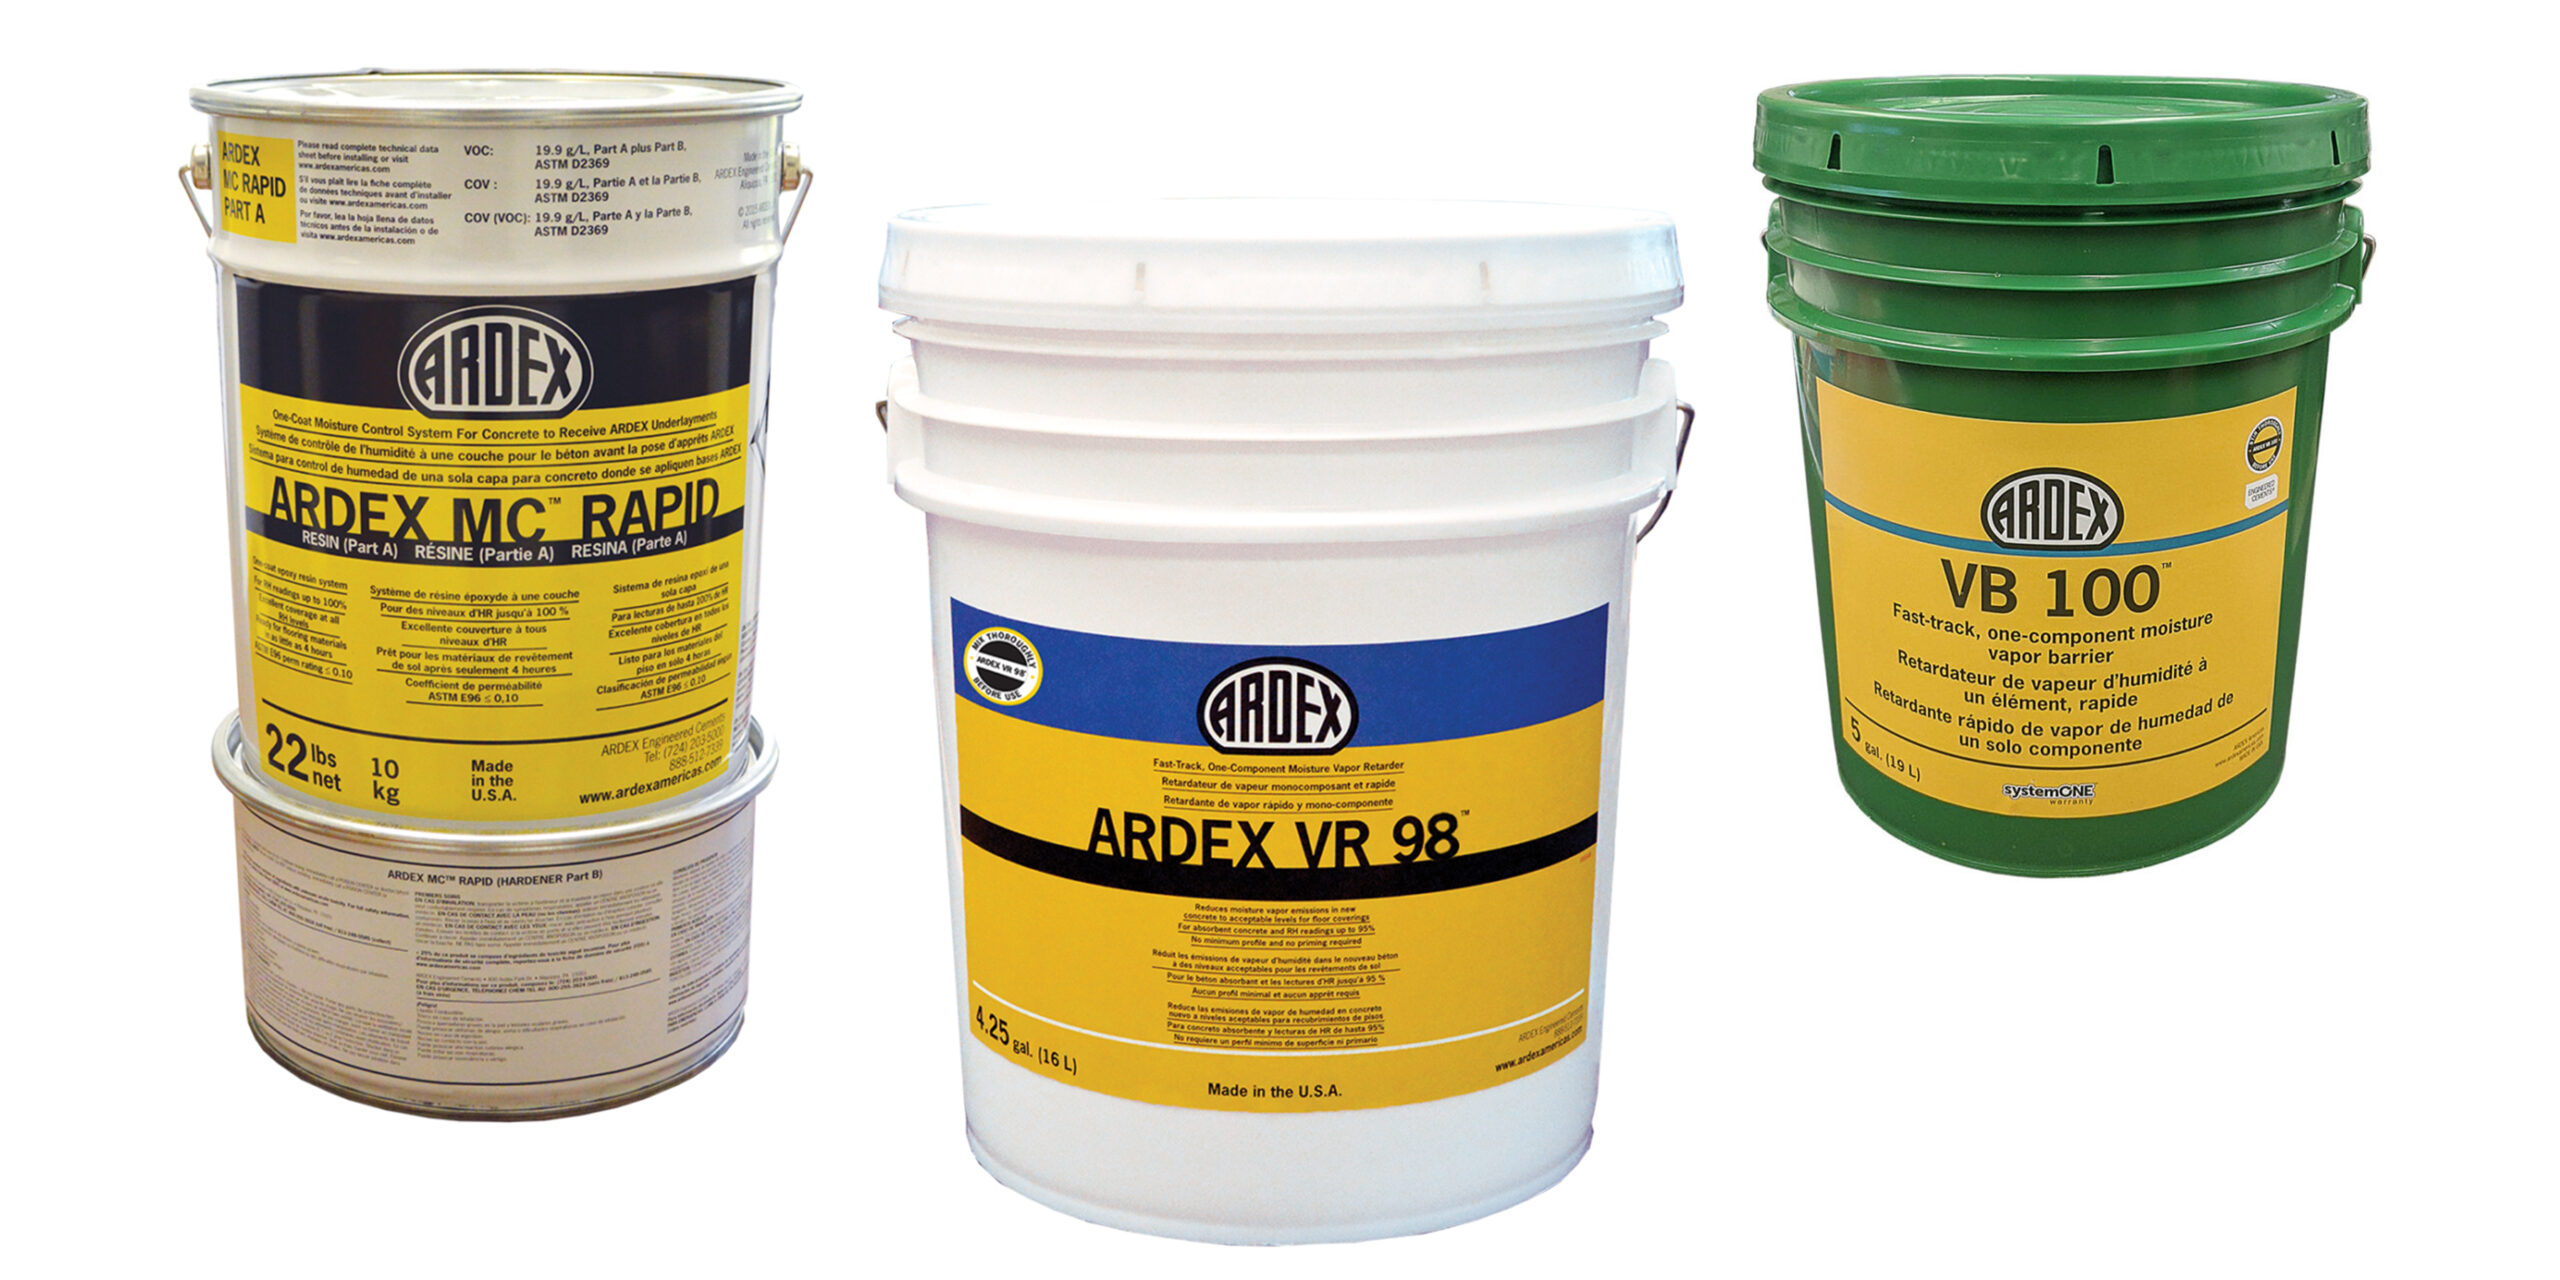 Ardex Moisture Mitigation Products